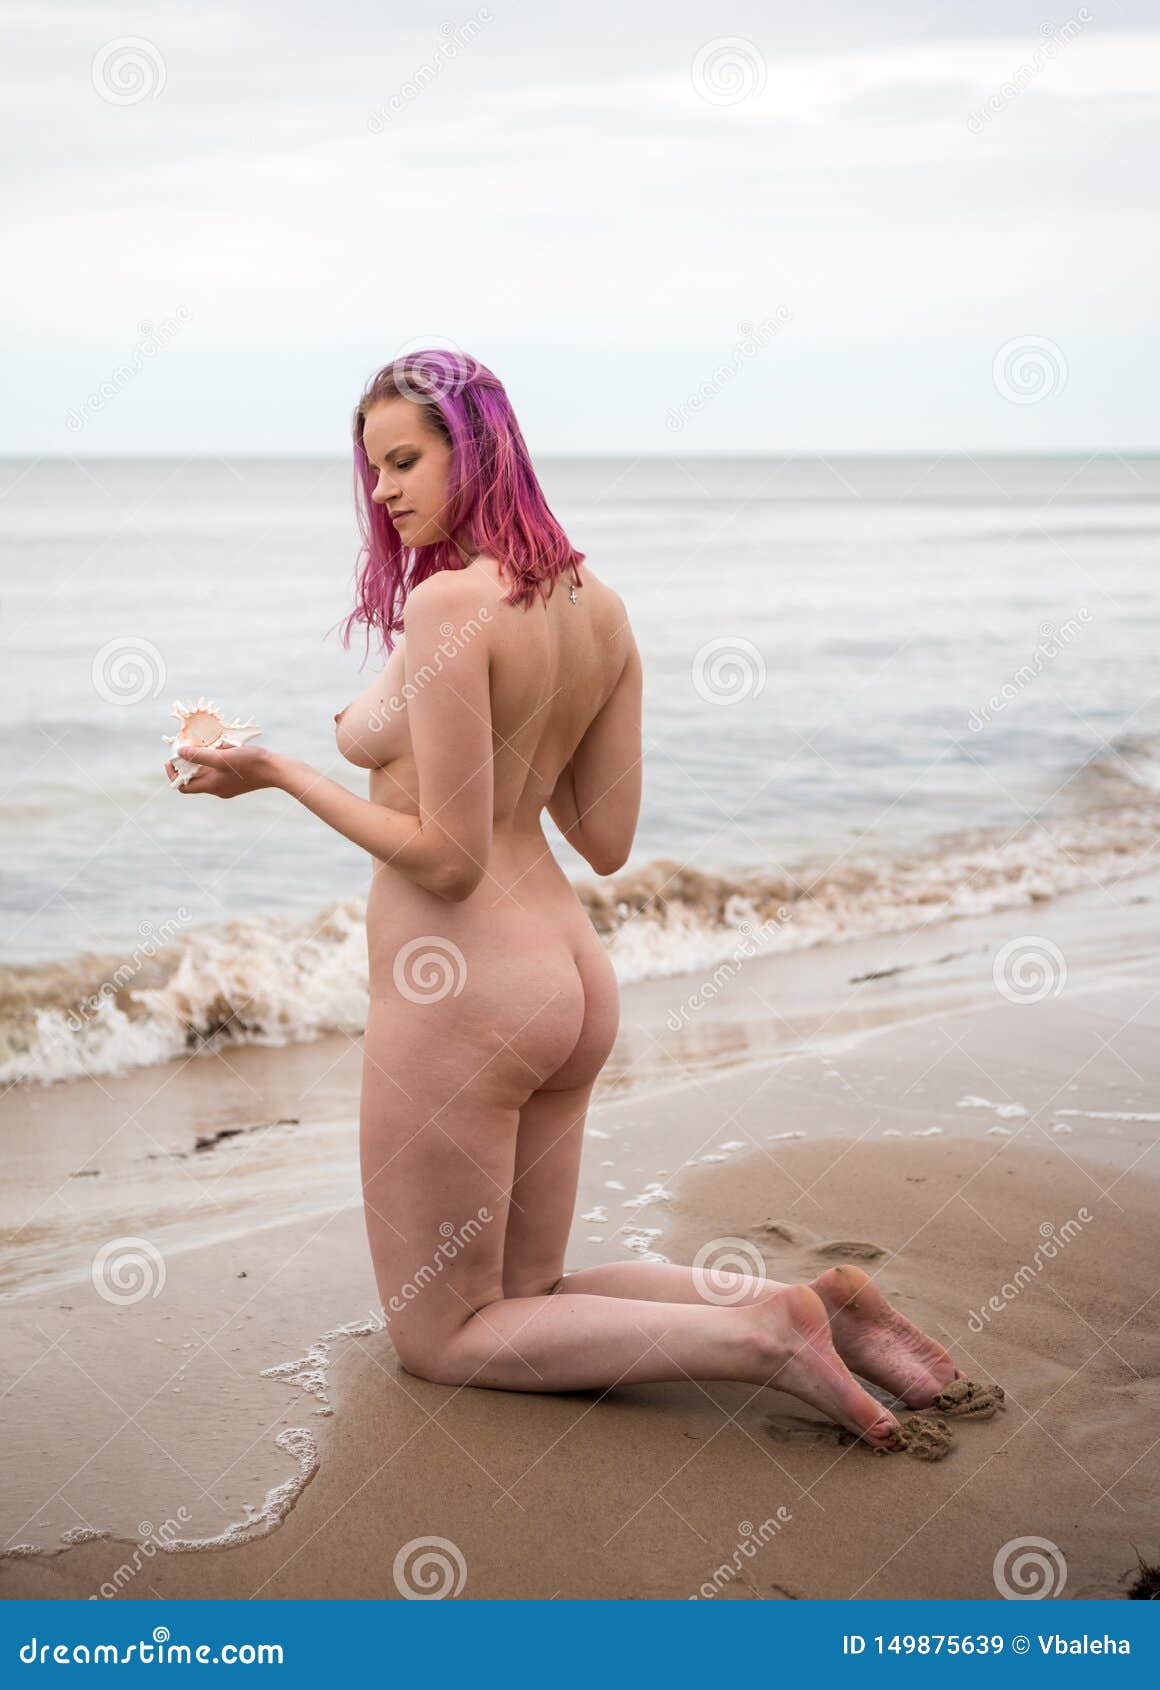 Girl naked beach Any Beach